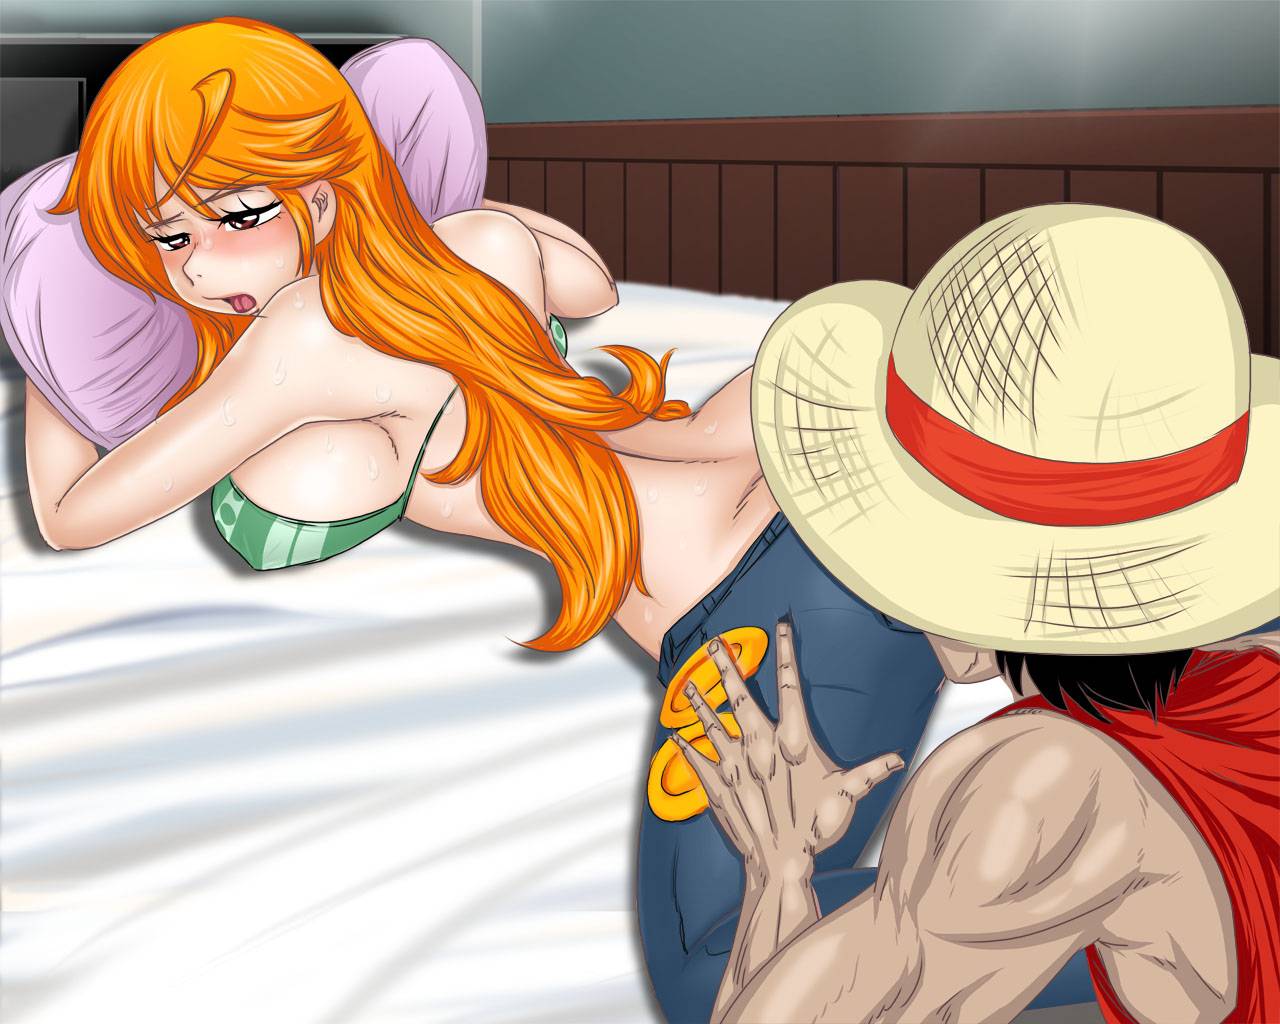 Carrot One Piece Upskirt.